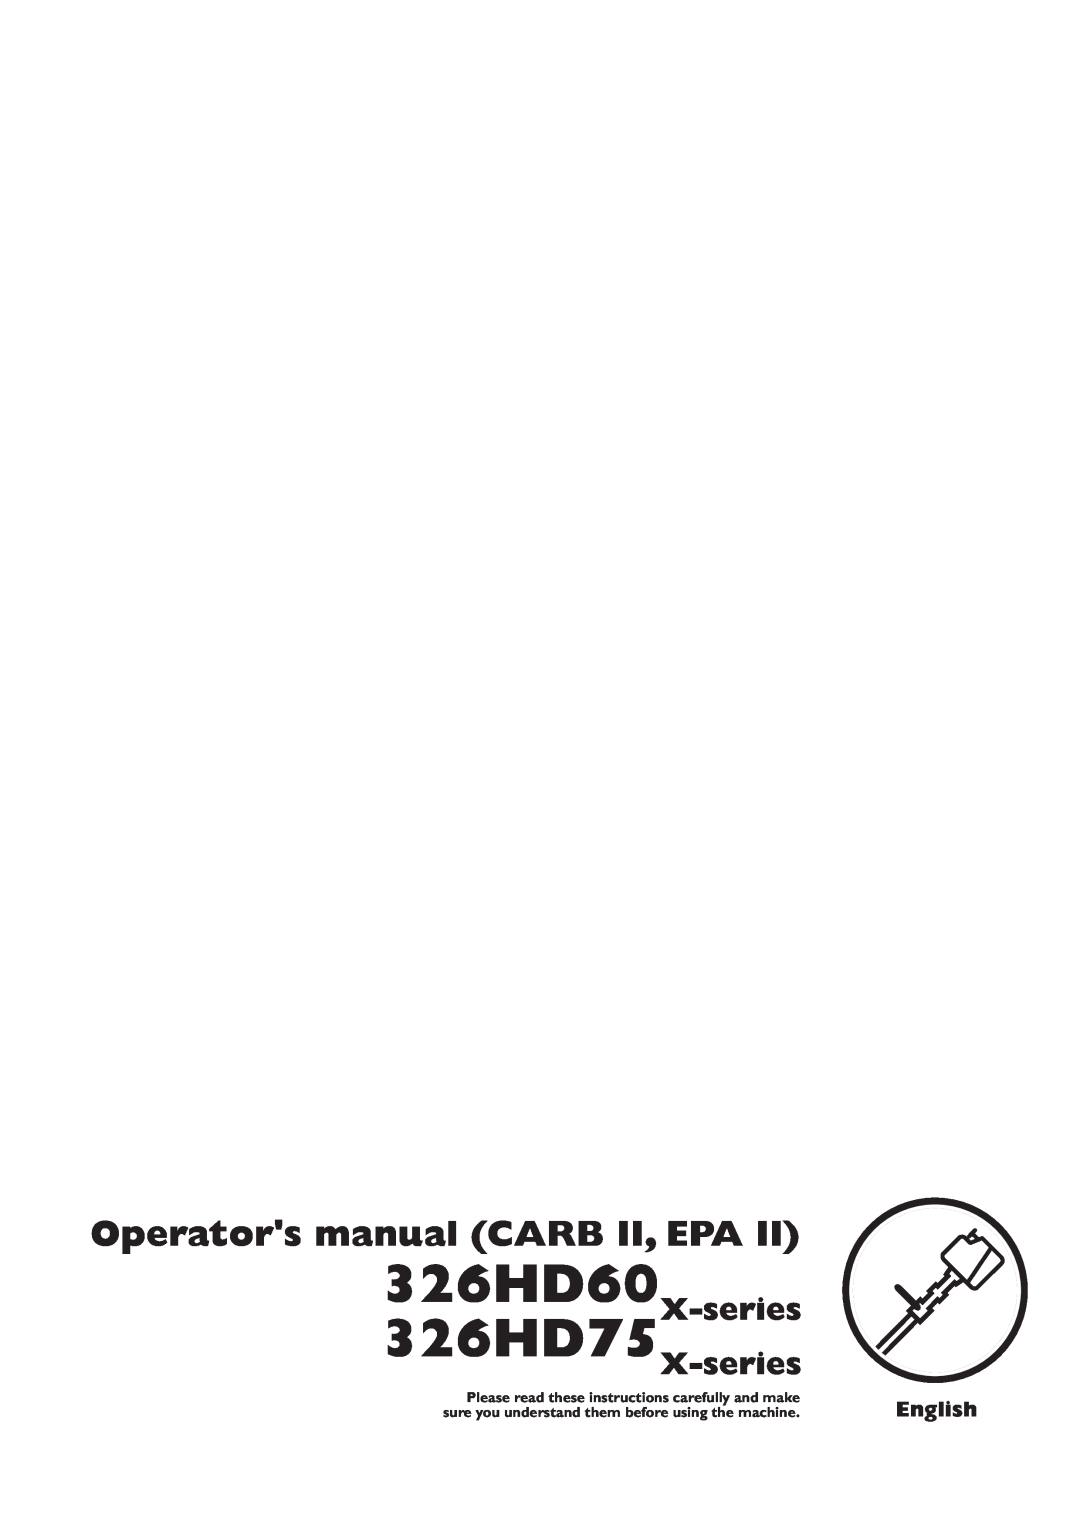 Husqvarna manual Operators manual CARB II, EPA, 326HD60X-series 326HD75X-series 